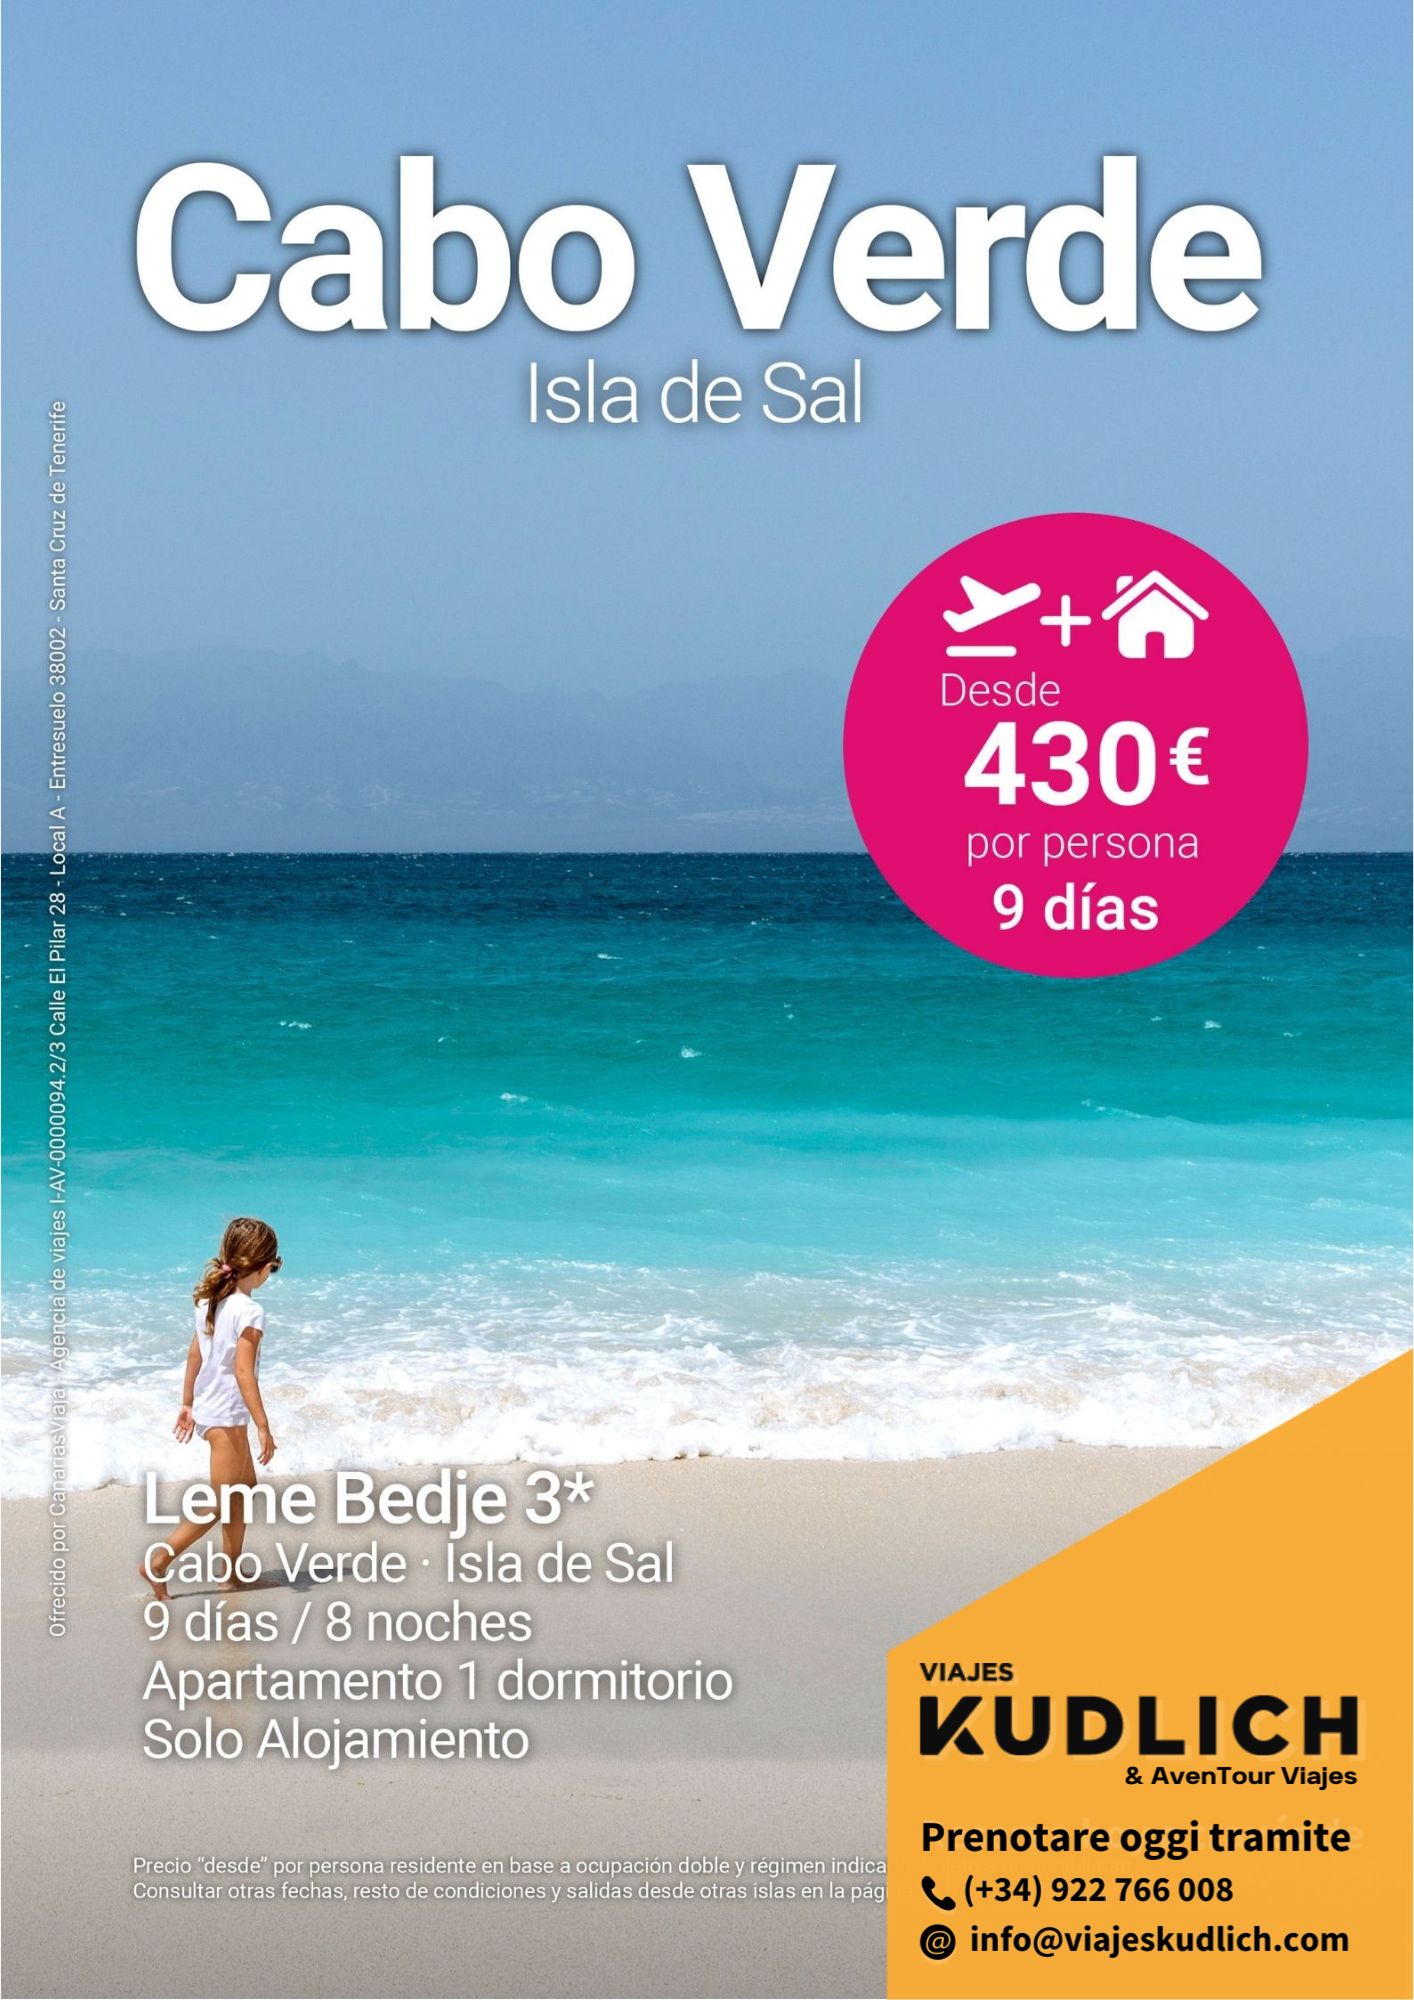 Offerta di viaggio a Capo Verde, Isola di Sal: Hotel Leme Bedje (3 stelle). 9 giorni / 8 notti. Da € 430 a persona.